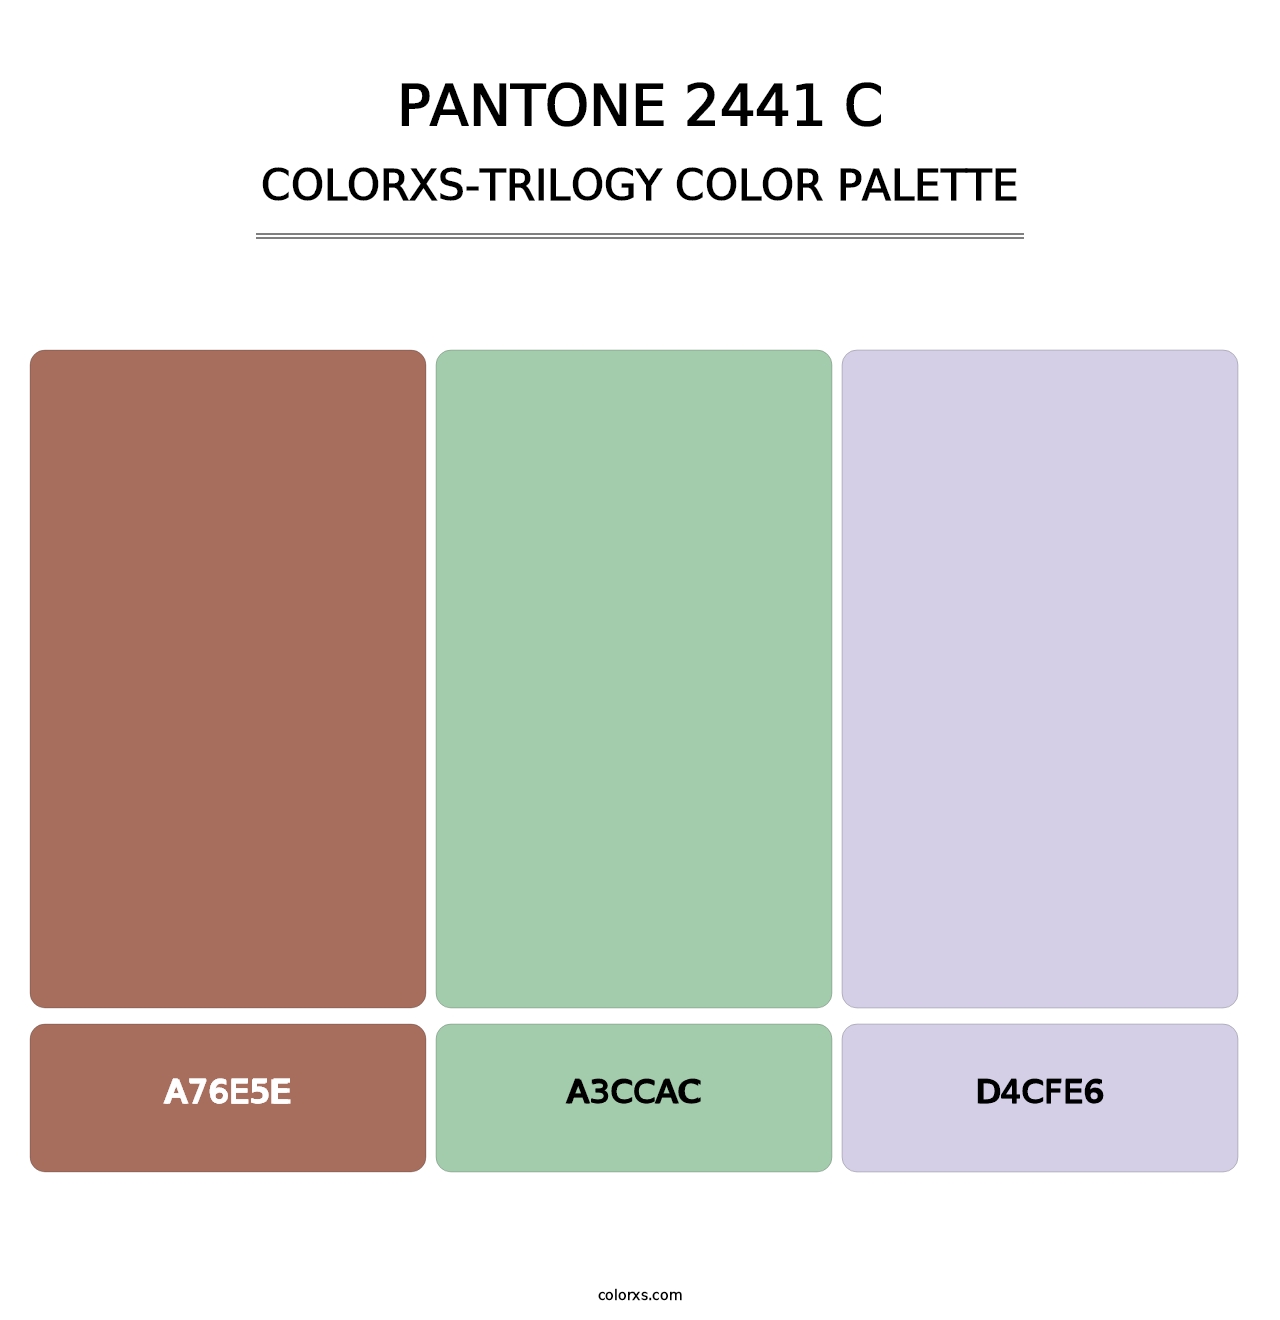 PANTONE 2441 C - Colorxs Trilogy Palette